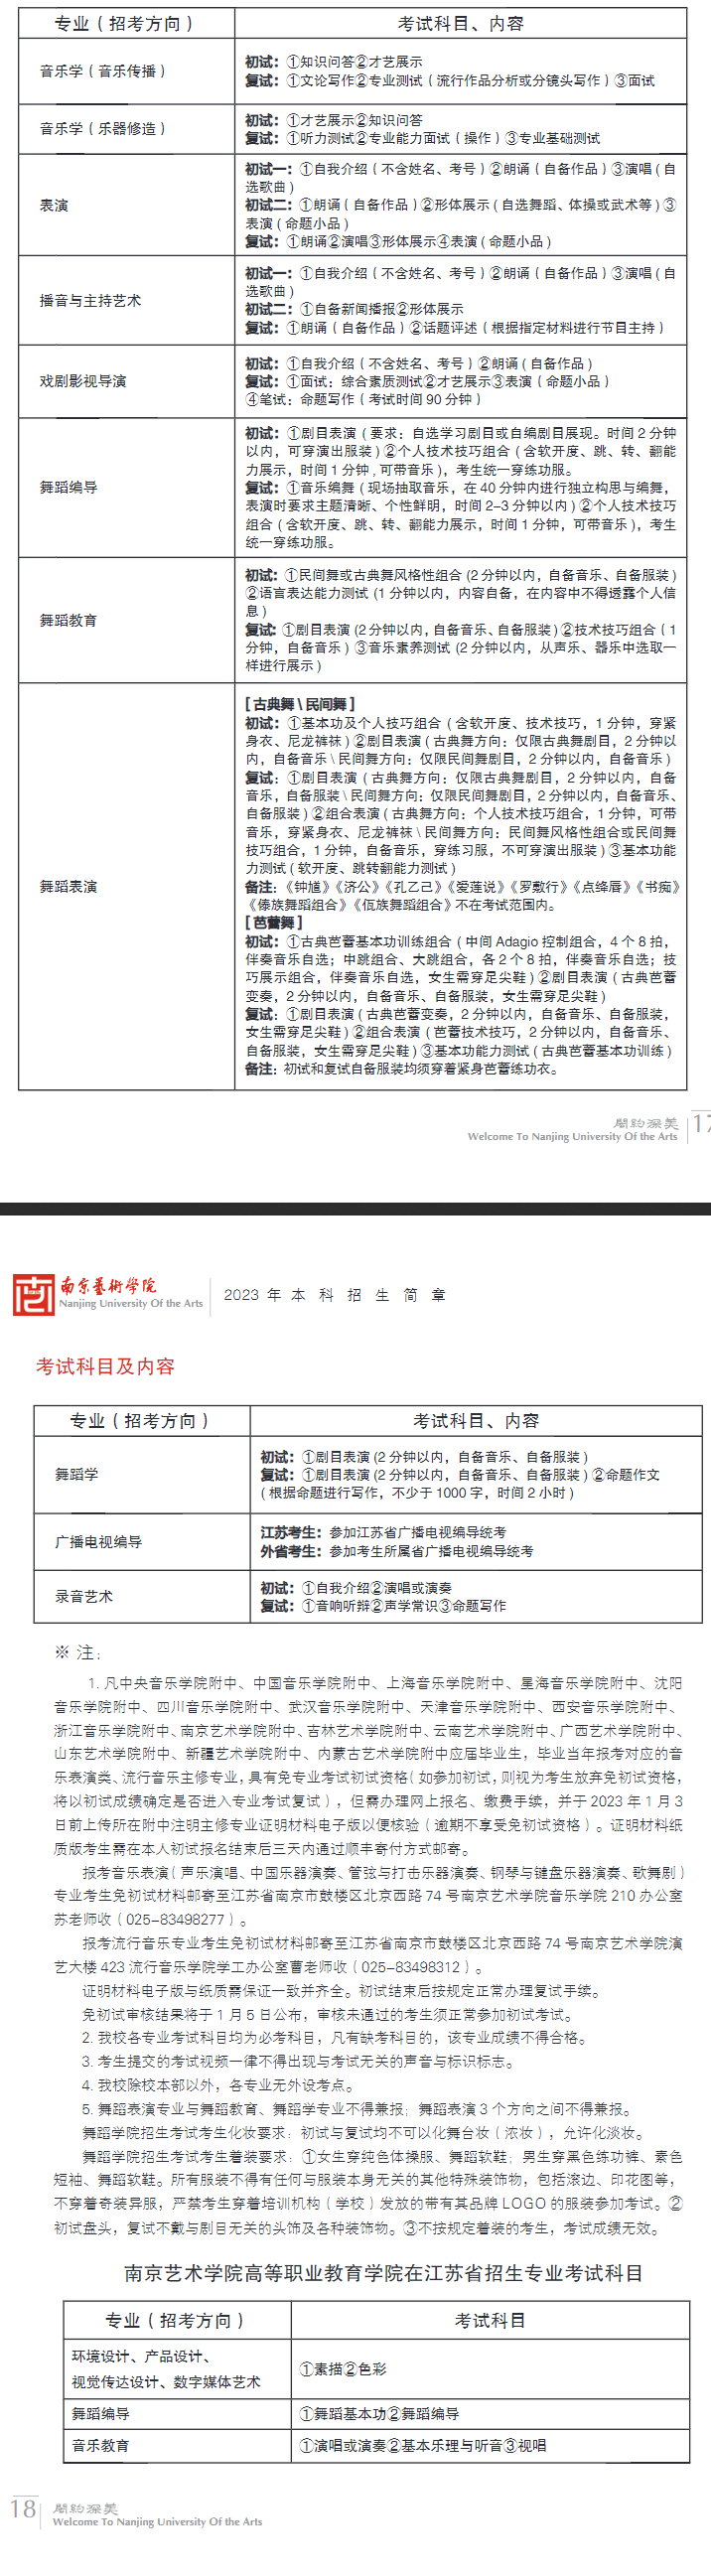 2023南京艺术学院校考考试科目及内容 什么时候考试